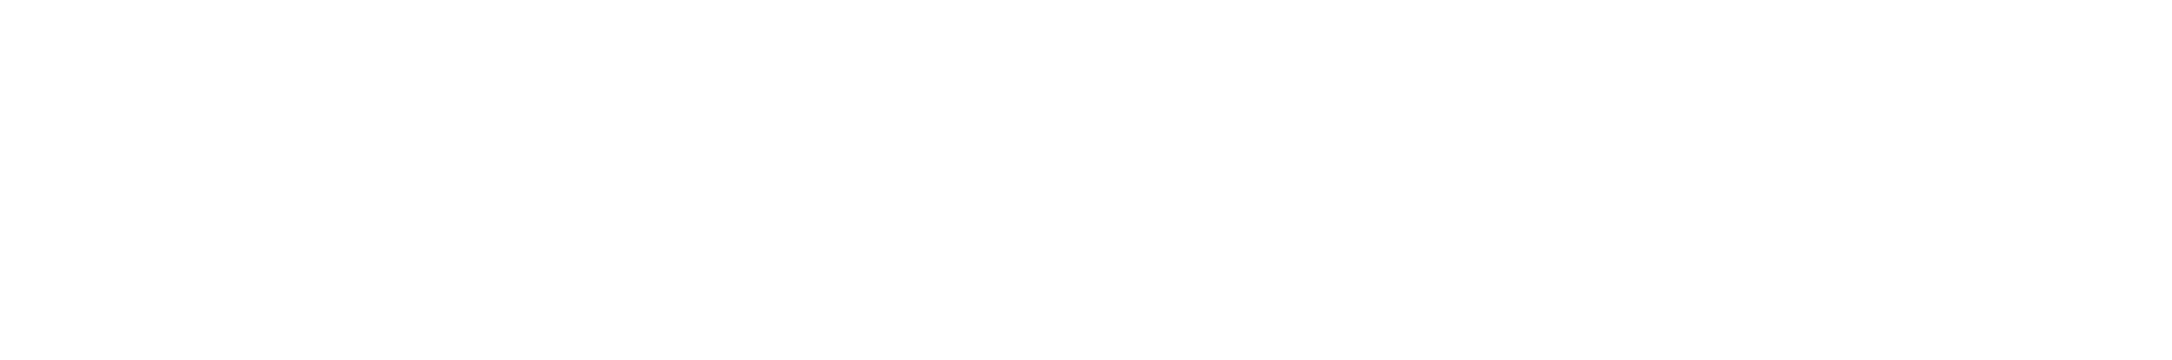 Explorers Trust Explorer